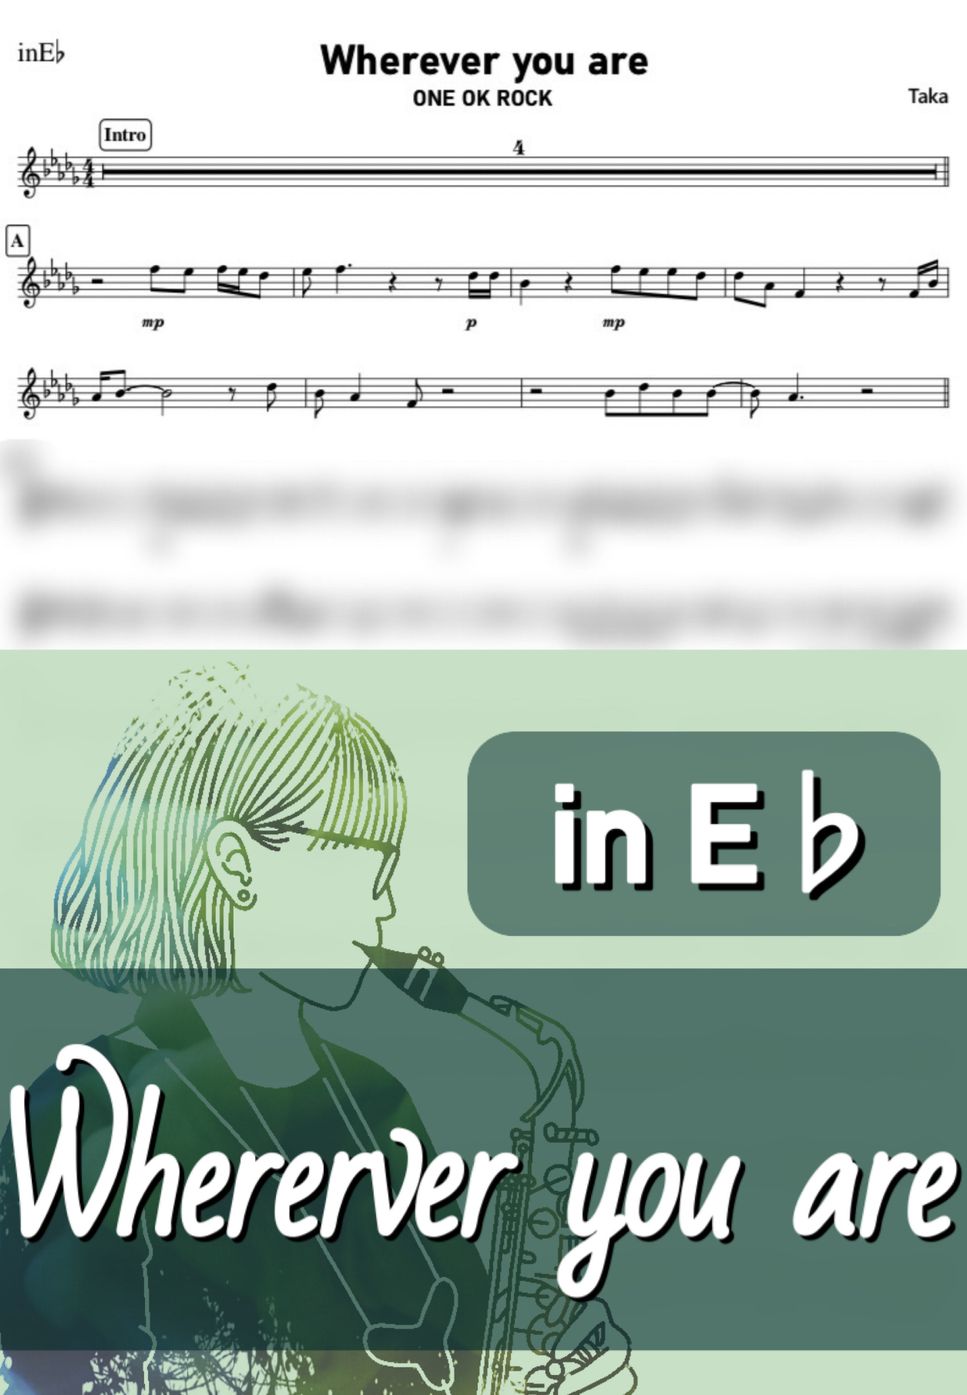 ONE OK ROCK - Wherever you are (E♭) by kanamusic